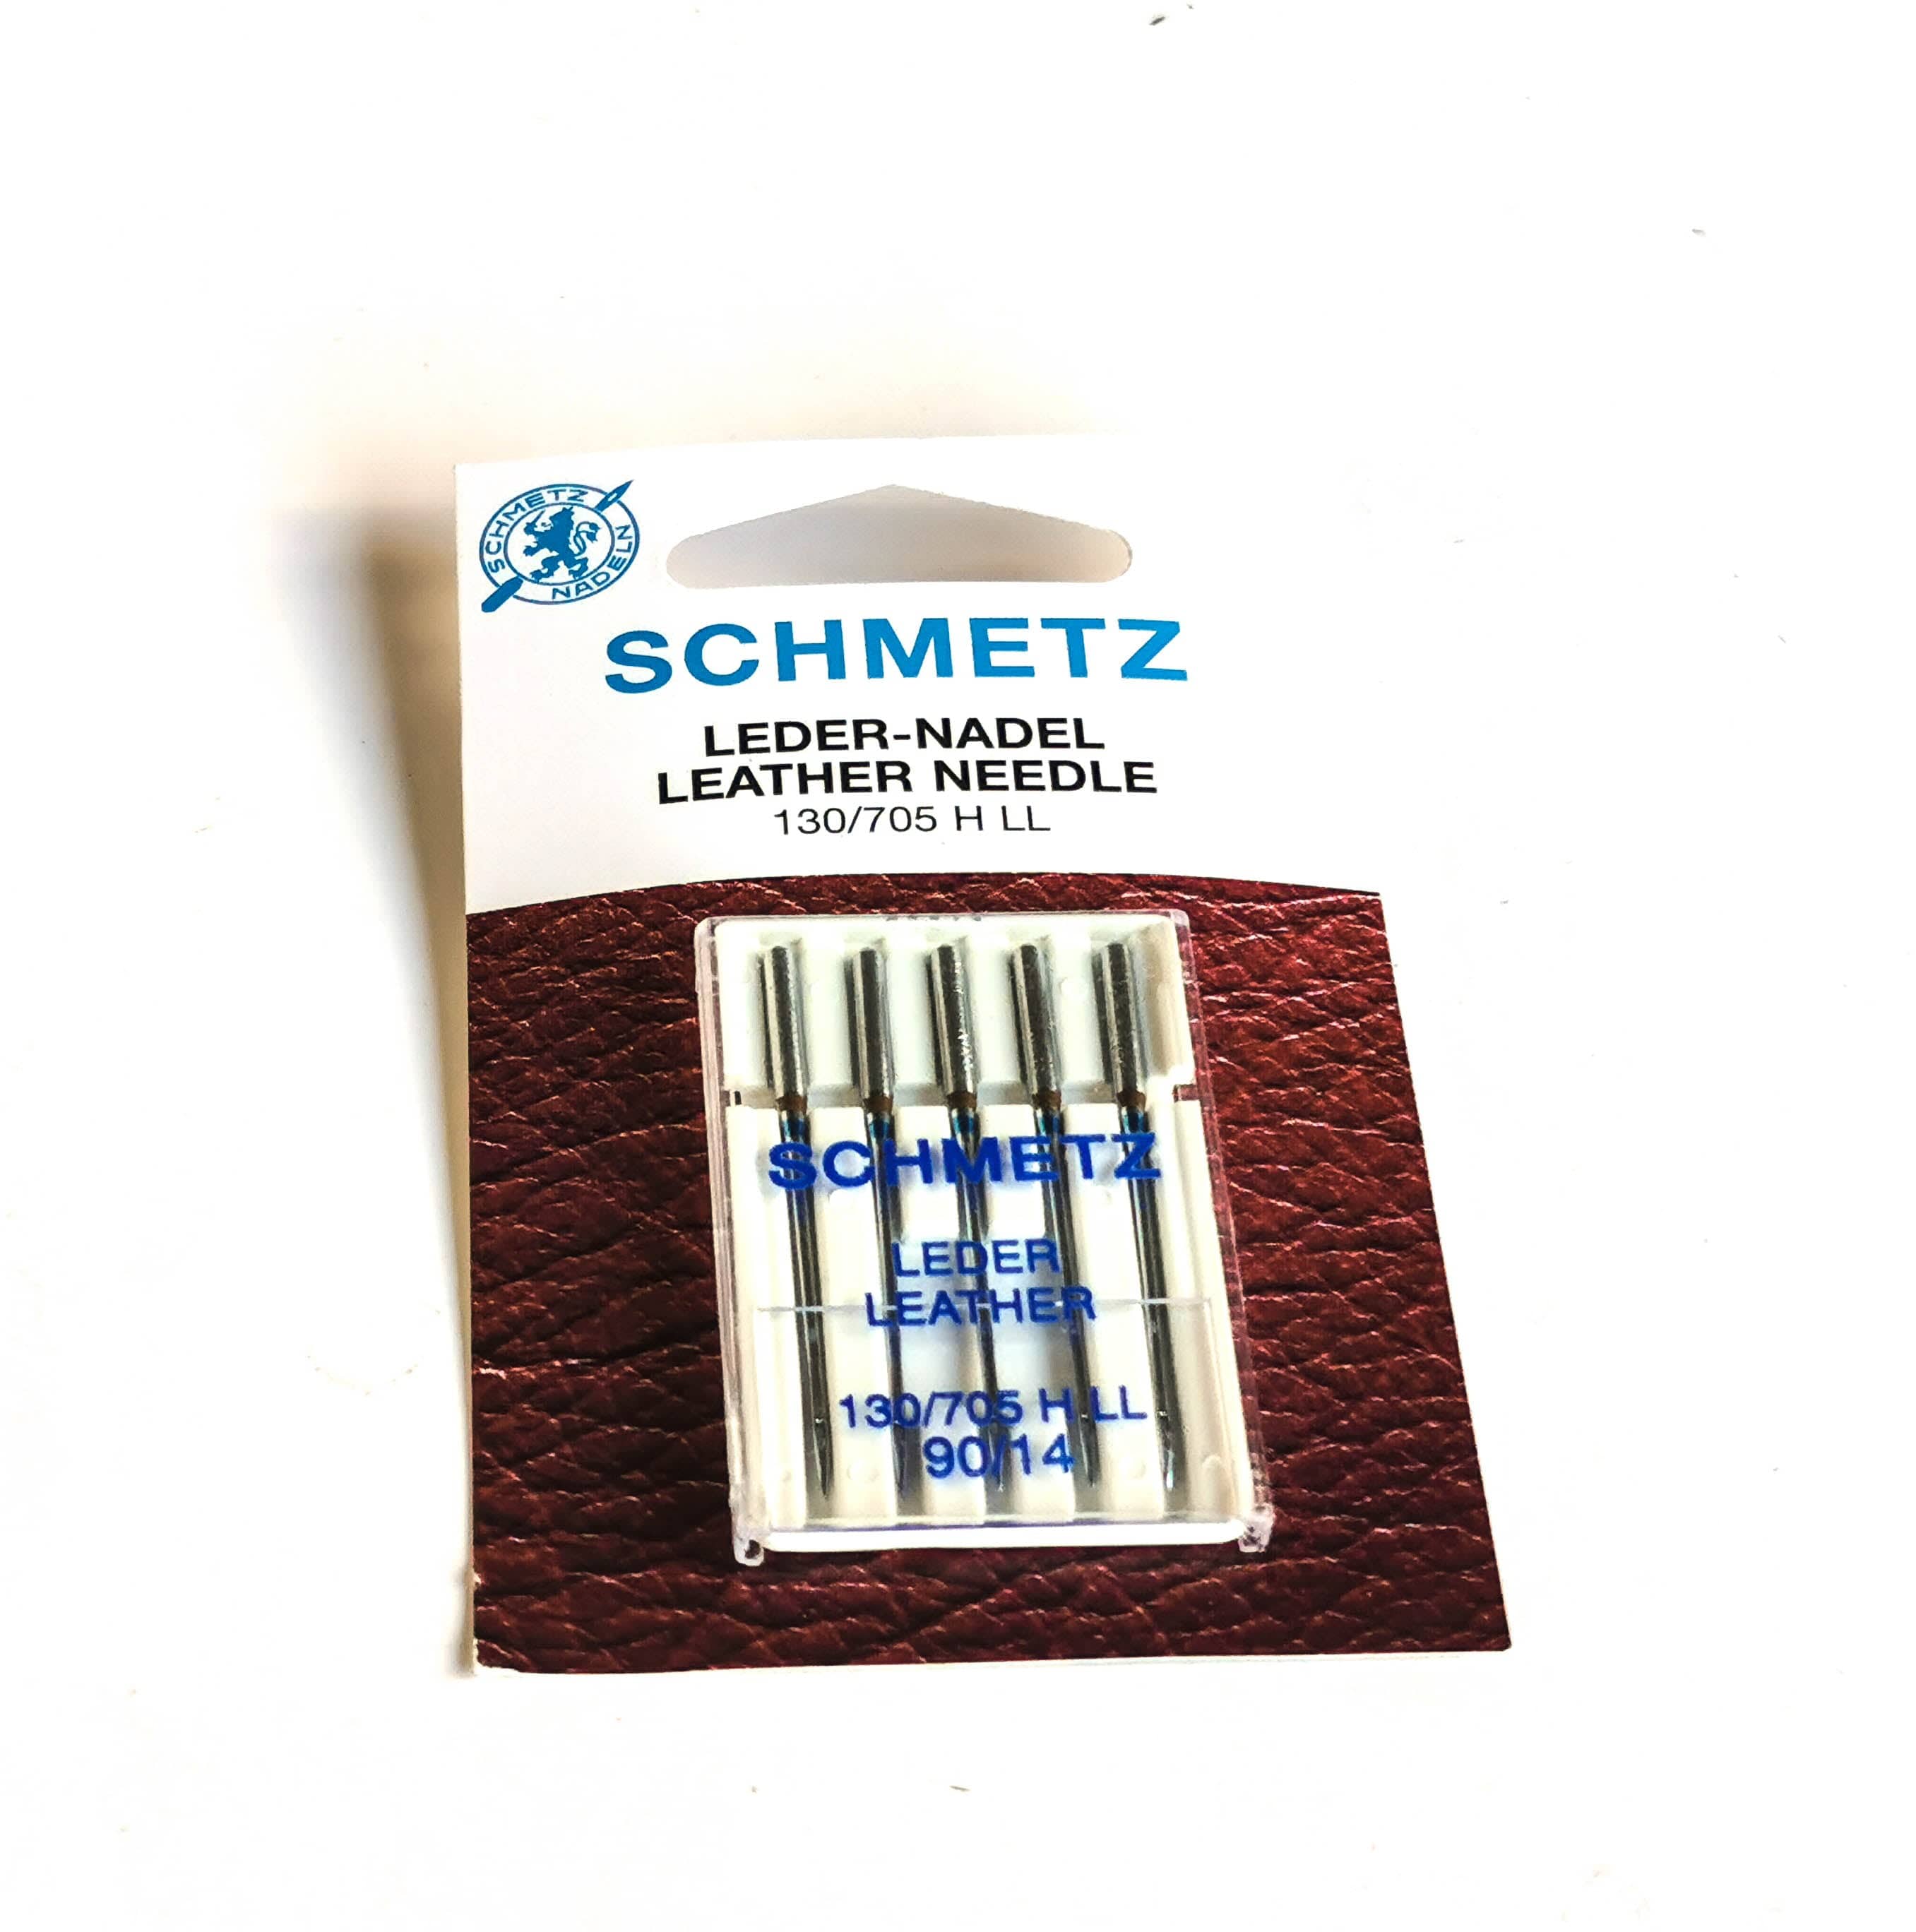 Schmetz Leather Needle 130/705 90/14 - Kiwi Bagineers